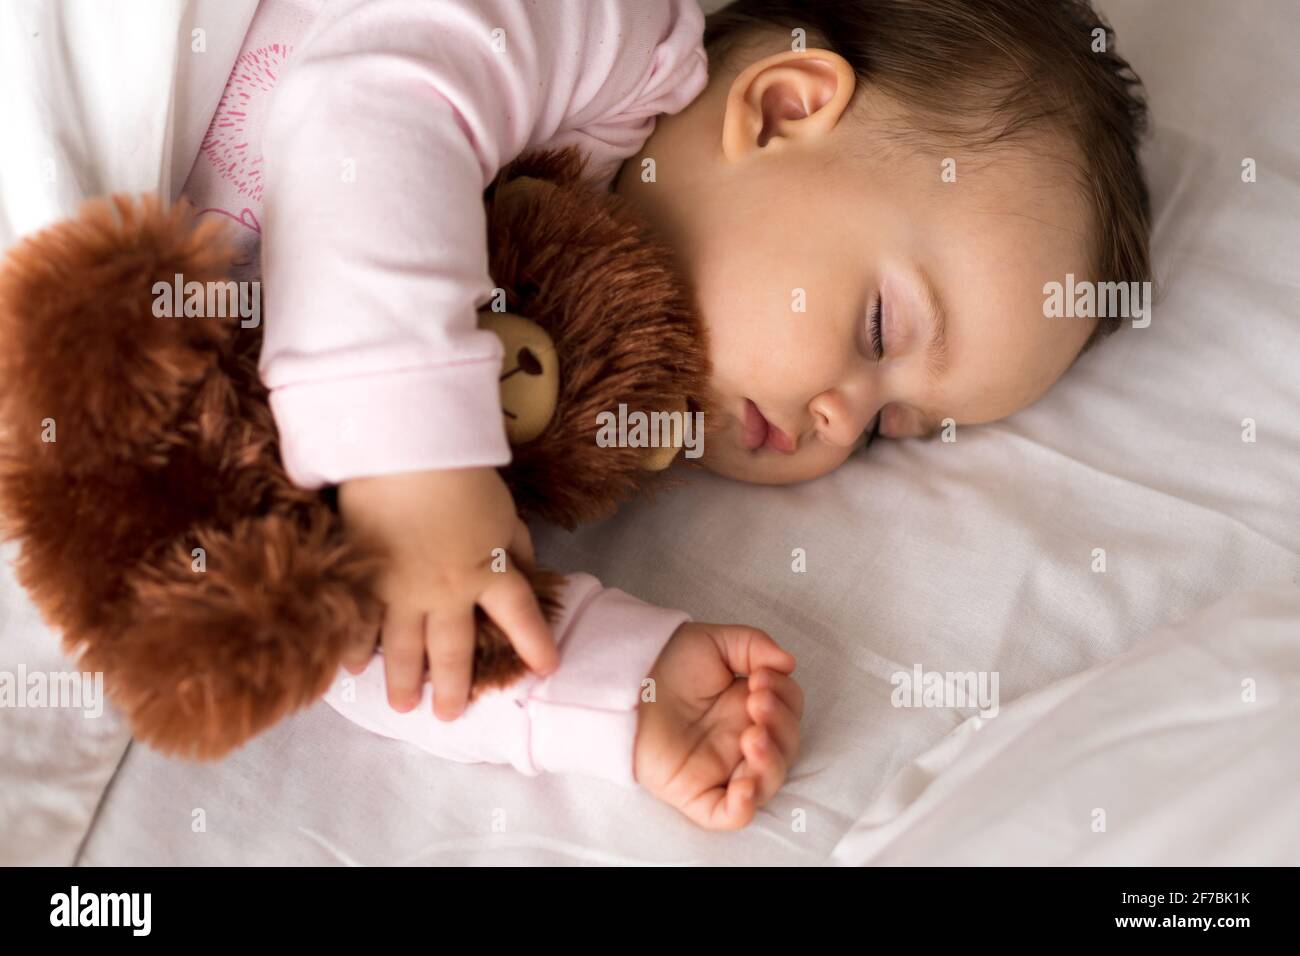 Authentische Porträt niedlichen kaukasischen kleinen Säugling mollig Baby Mädchen oder Jungen in rosa Schlaf mit Teddybär auf weißem Bett. Kind zur Mittagszeit ruhen. Pflege Stockfoto